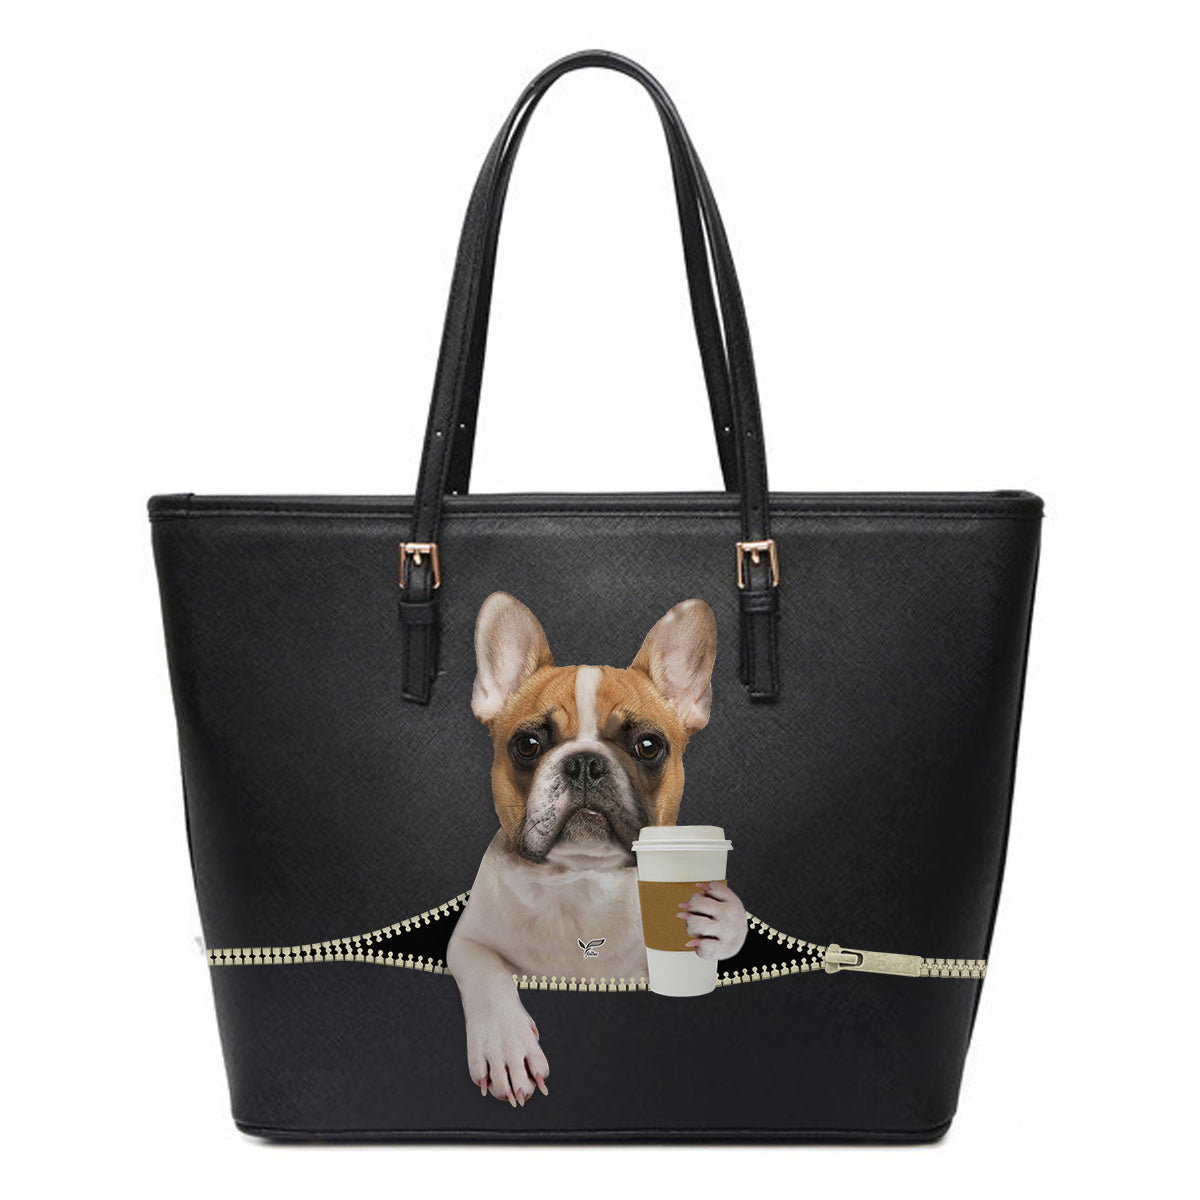 Good Morning - French Bulldog Tote Bag V1